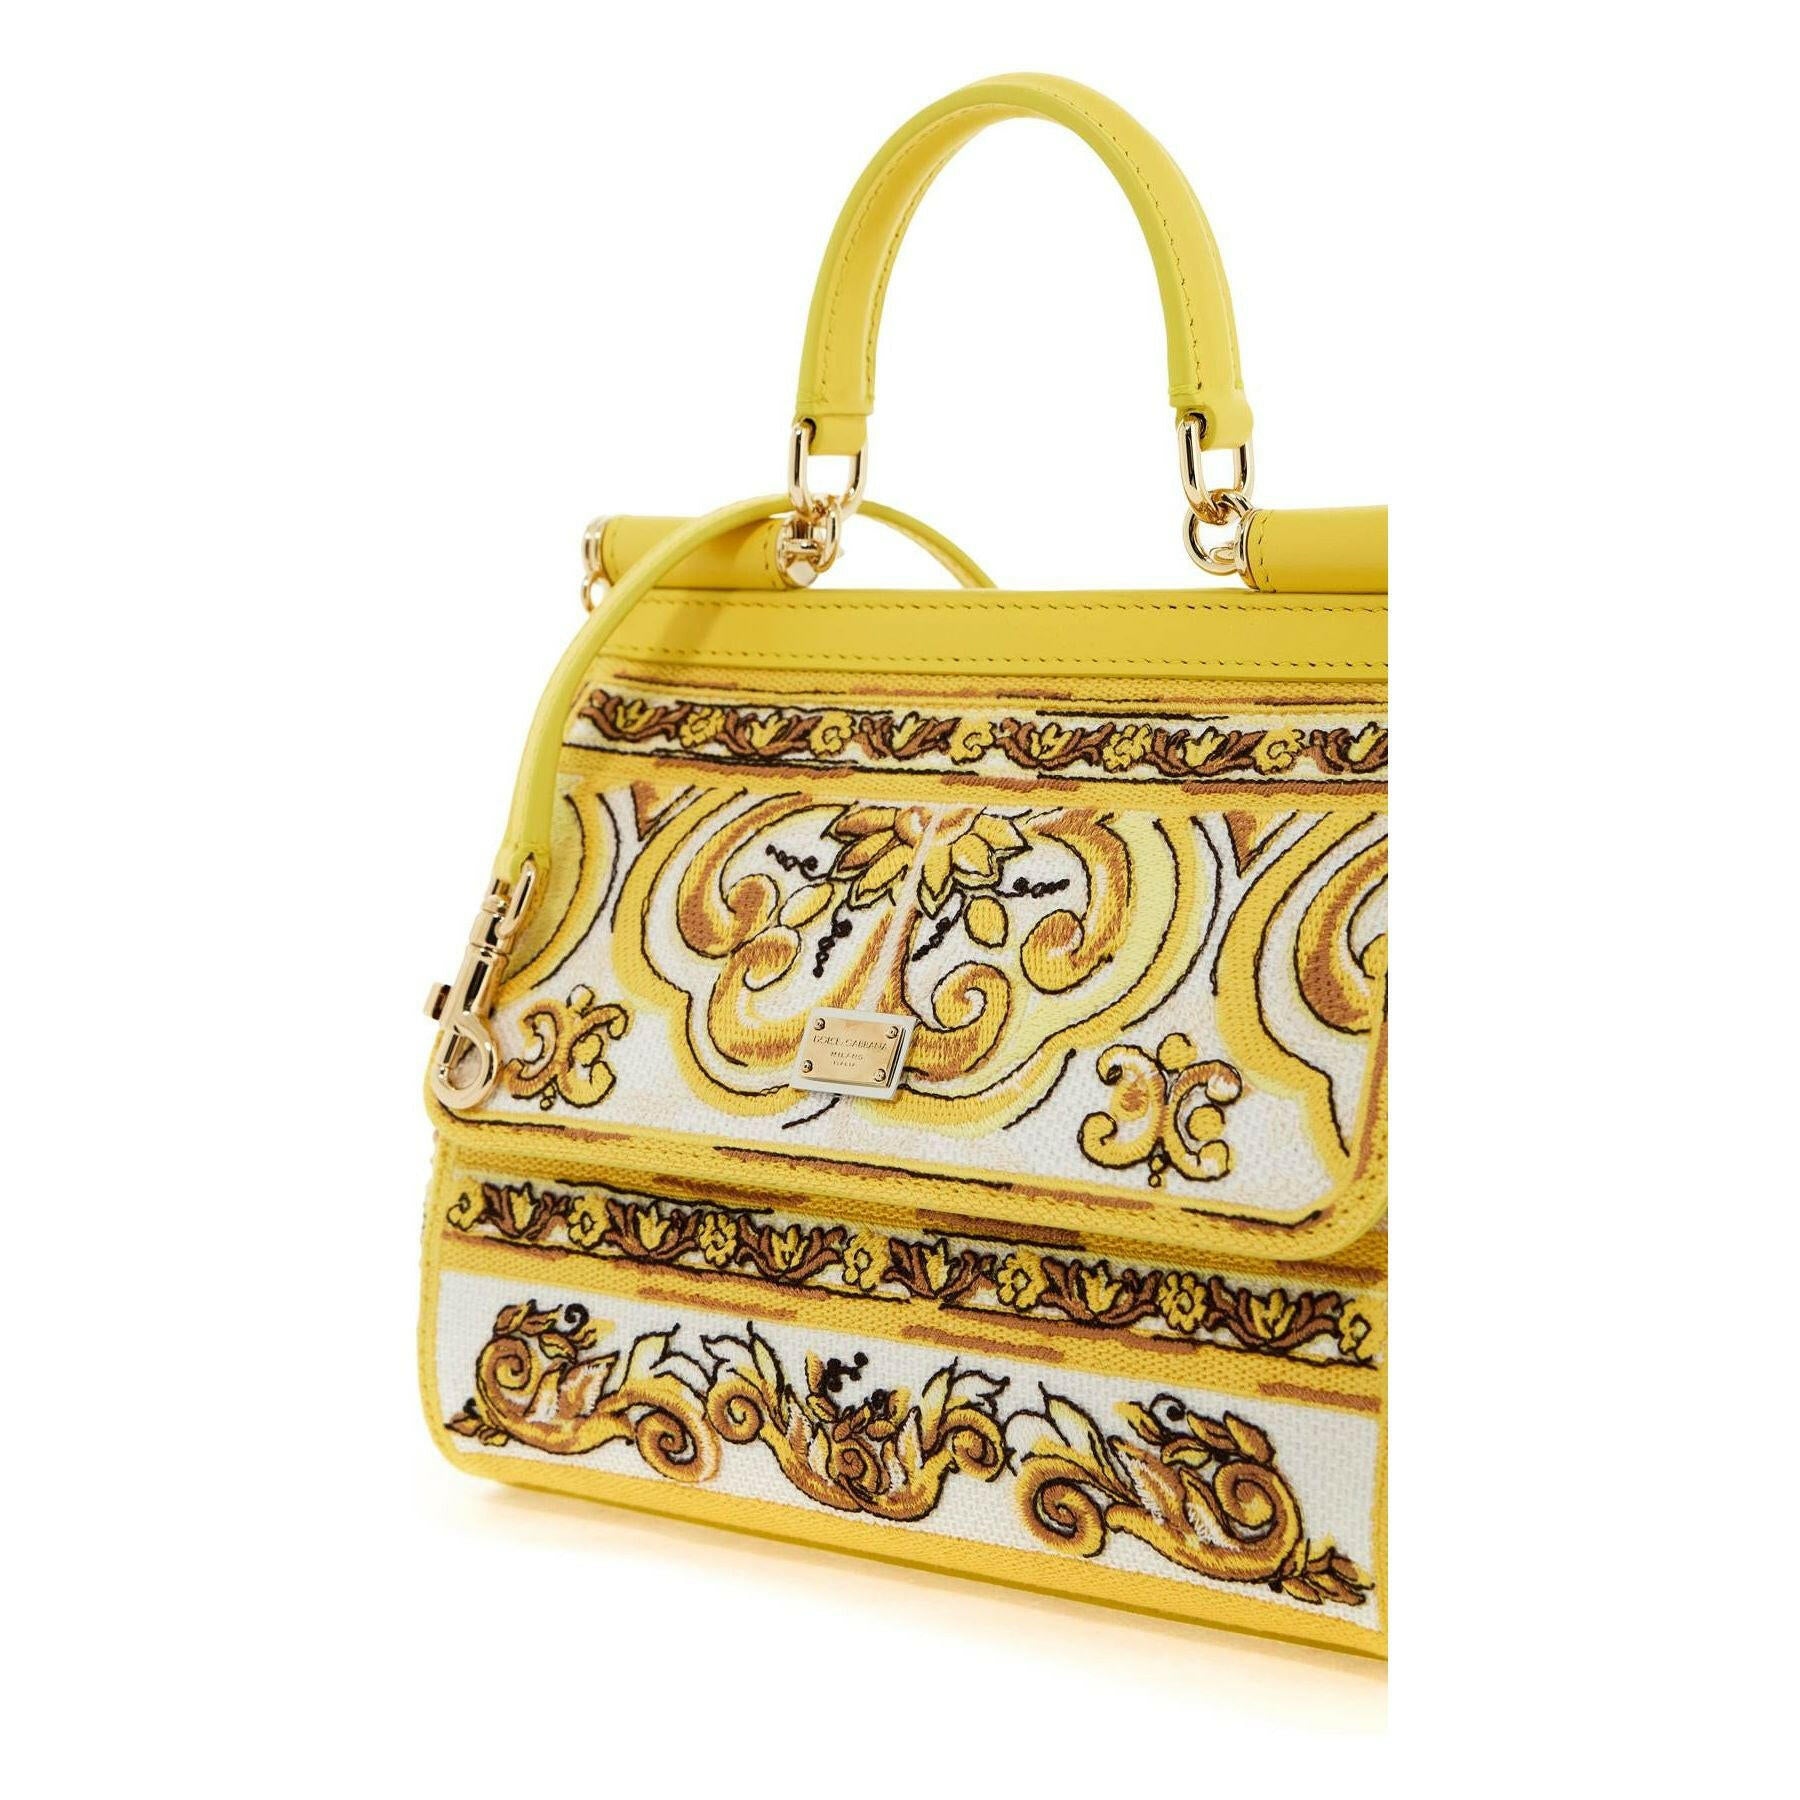 Embroidered Majolica Medium Sicily Handbag.